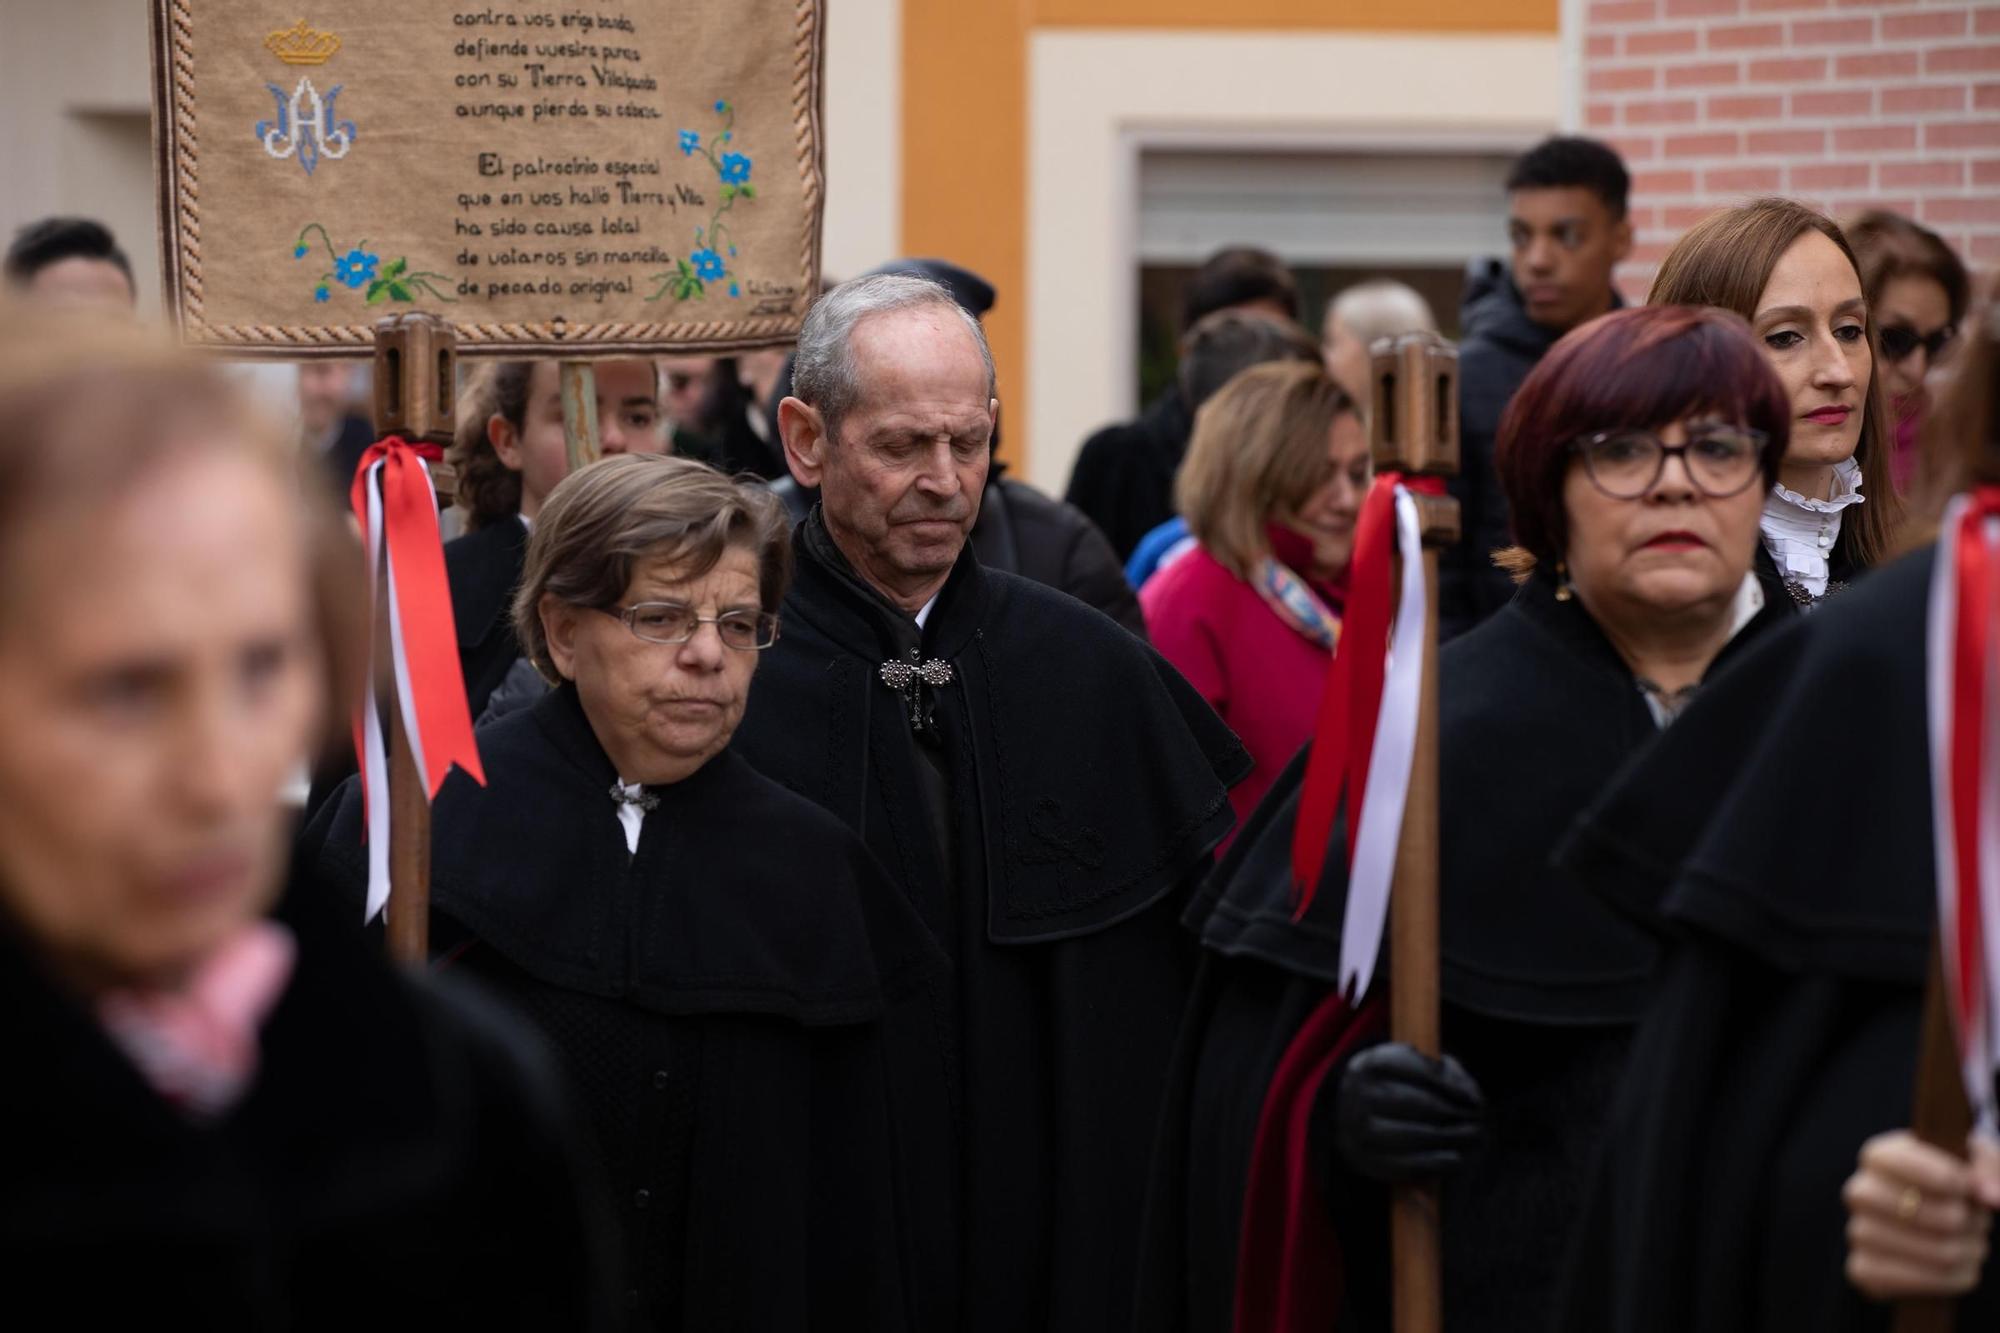 GALERÍA | Recreación del Voto a la Inmaculada en Villalpando